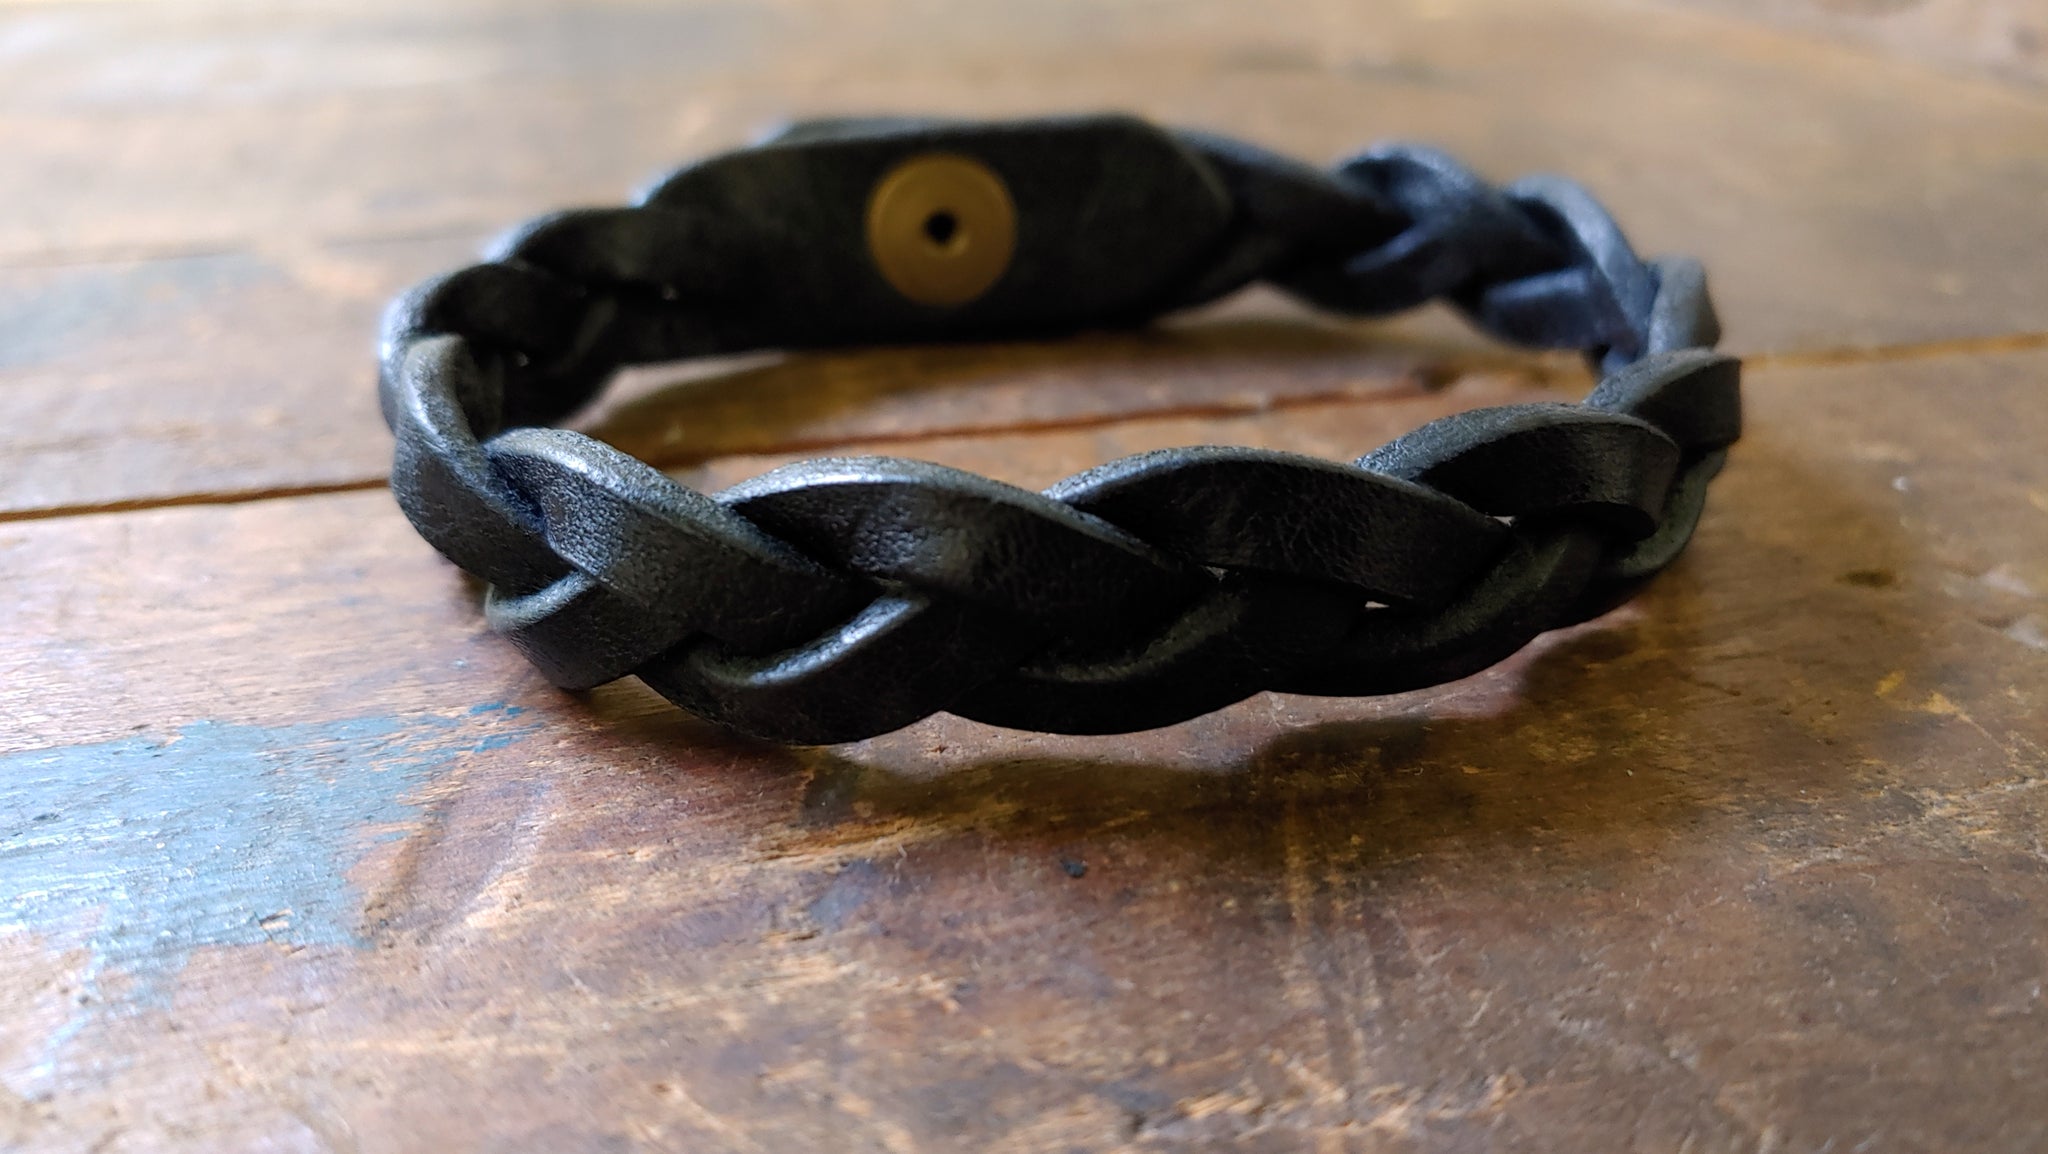 Bo Hand Braided Leather Mystery Bracelet - 9.0 WRIST SIZE - Trick Braid Bracelet, BLACK w/ Brass Snap